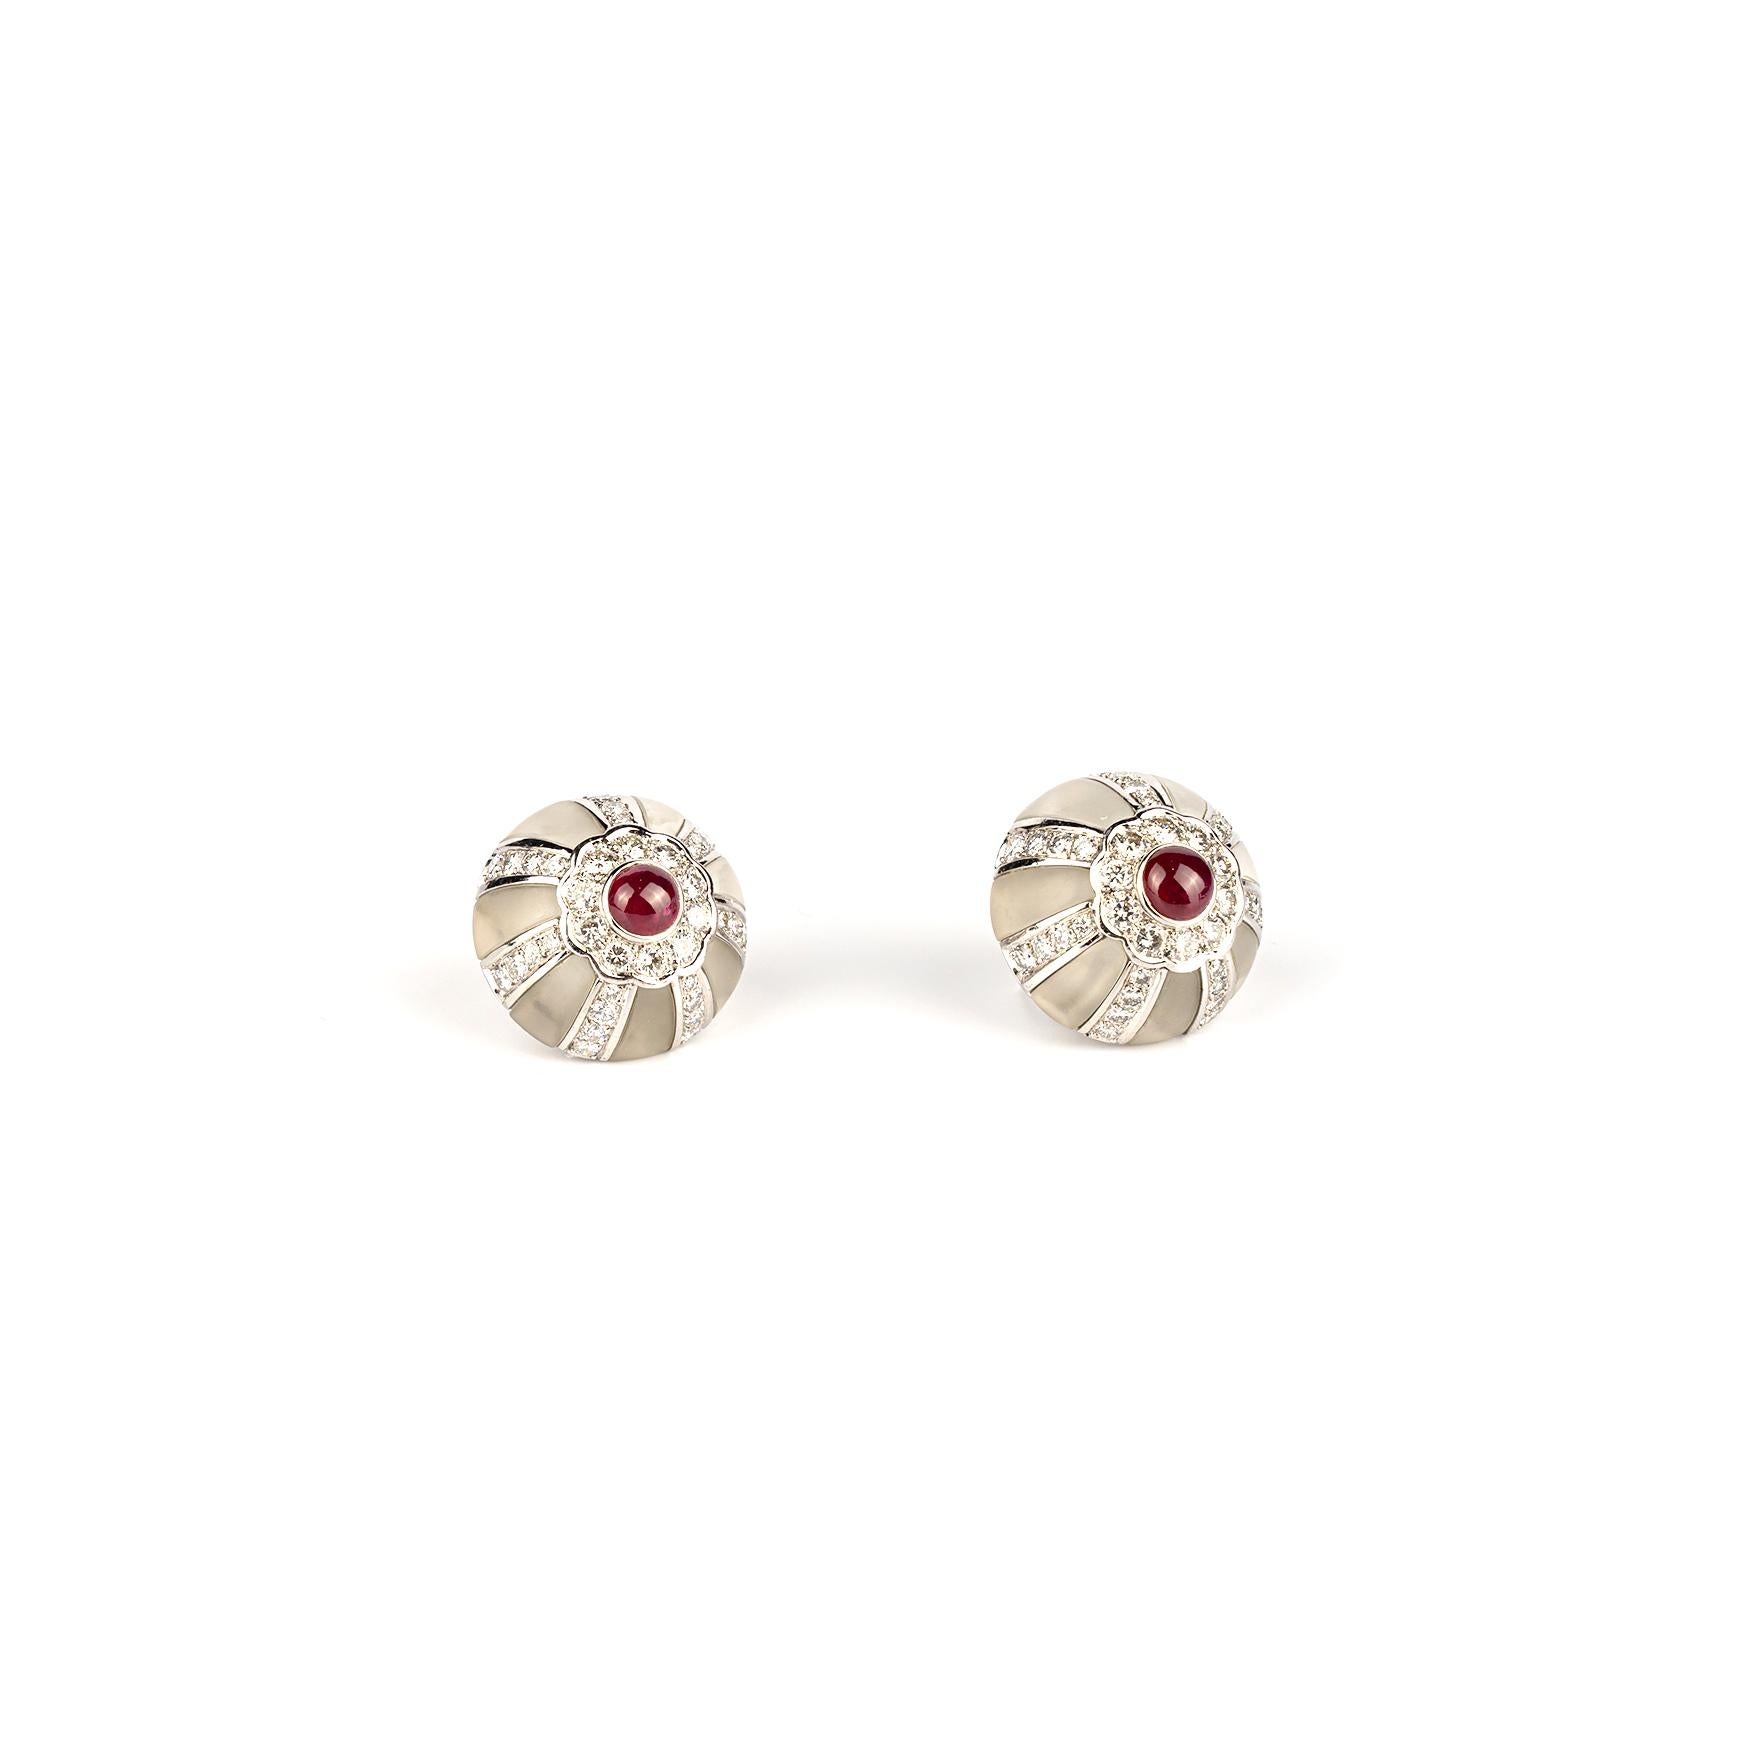 Une élégante paire de boucles d'oreilles en cristal de roche et rubis montées sur or blanc. Fabriqué en Amérique, vers 1970.